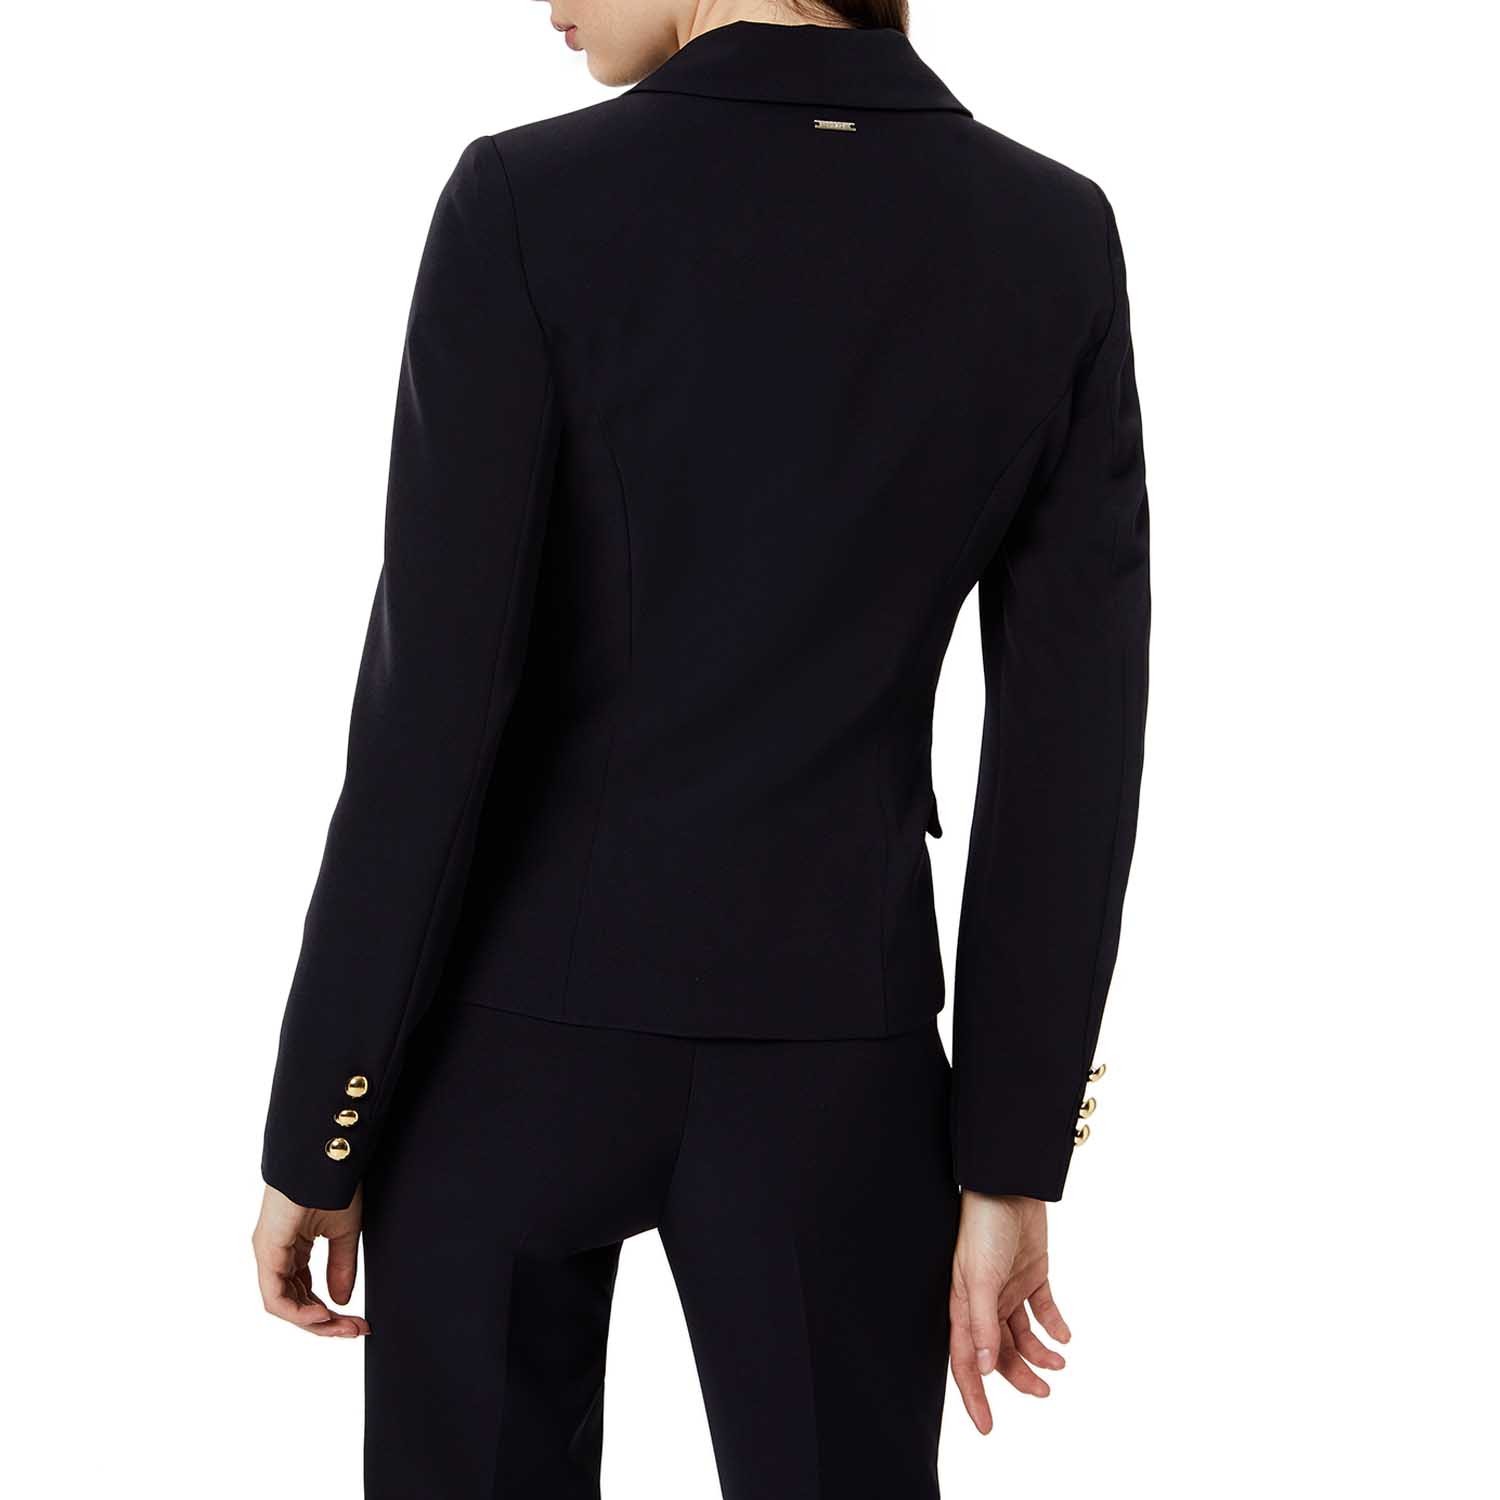 Giacca da donna con maniche a 3/4 con colletto a risvolto elegante nero Zarlena Blazer 